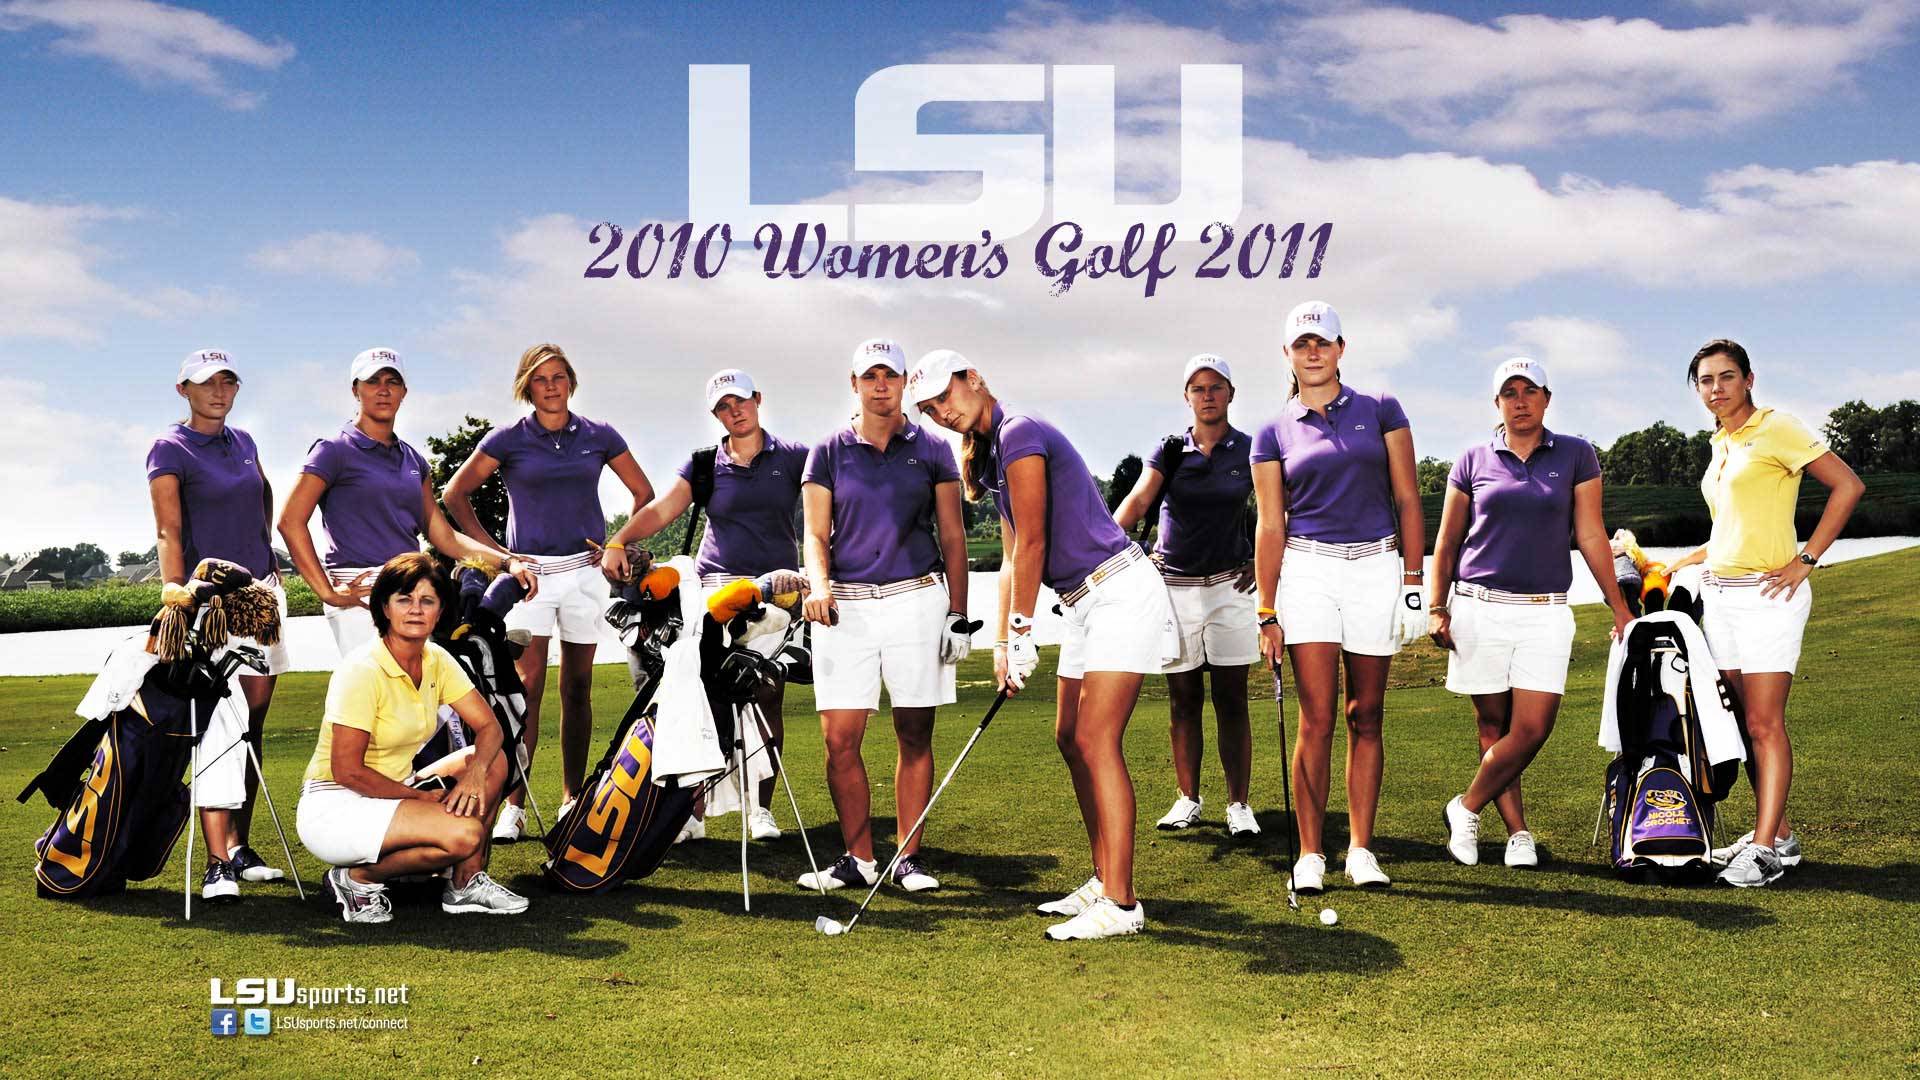 Lsu Women S Golf Wallpaper